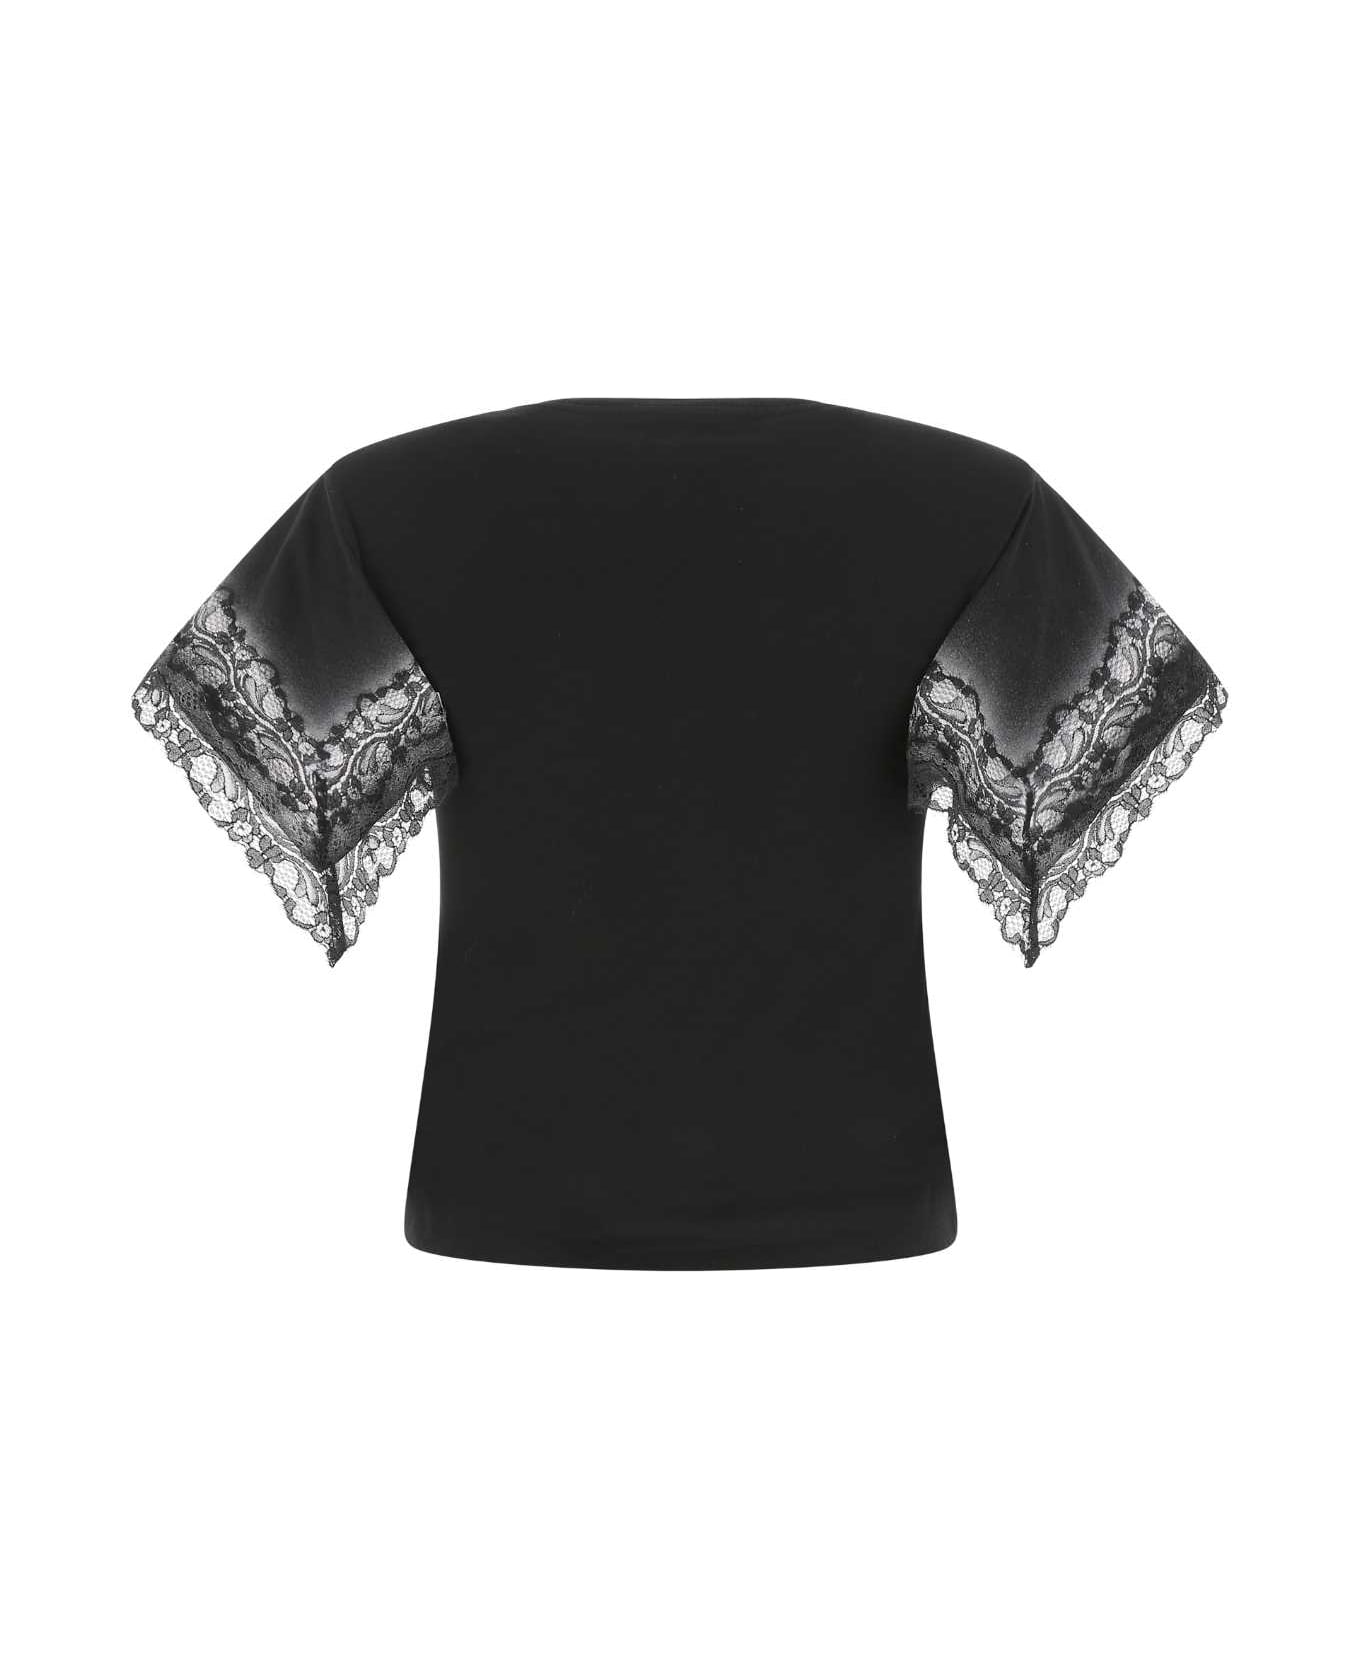 Koché Black Cotton T-shirt - 900 Tシャツ